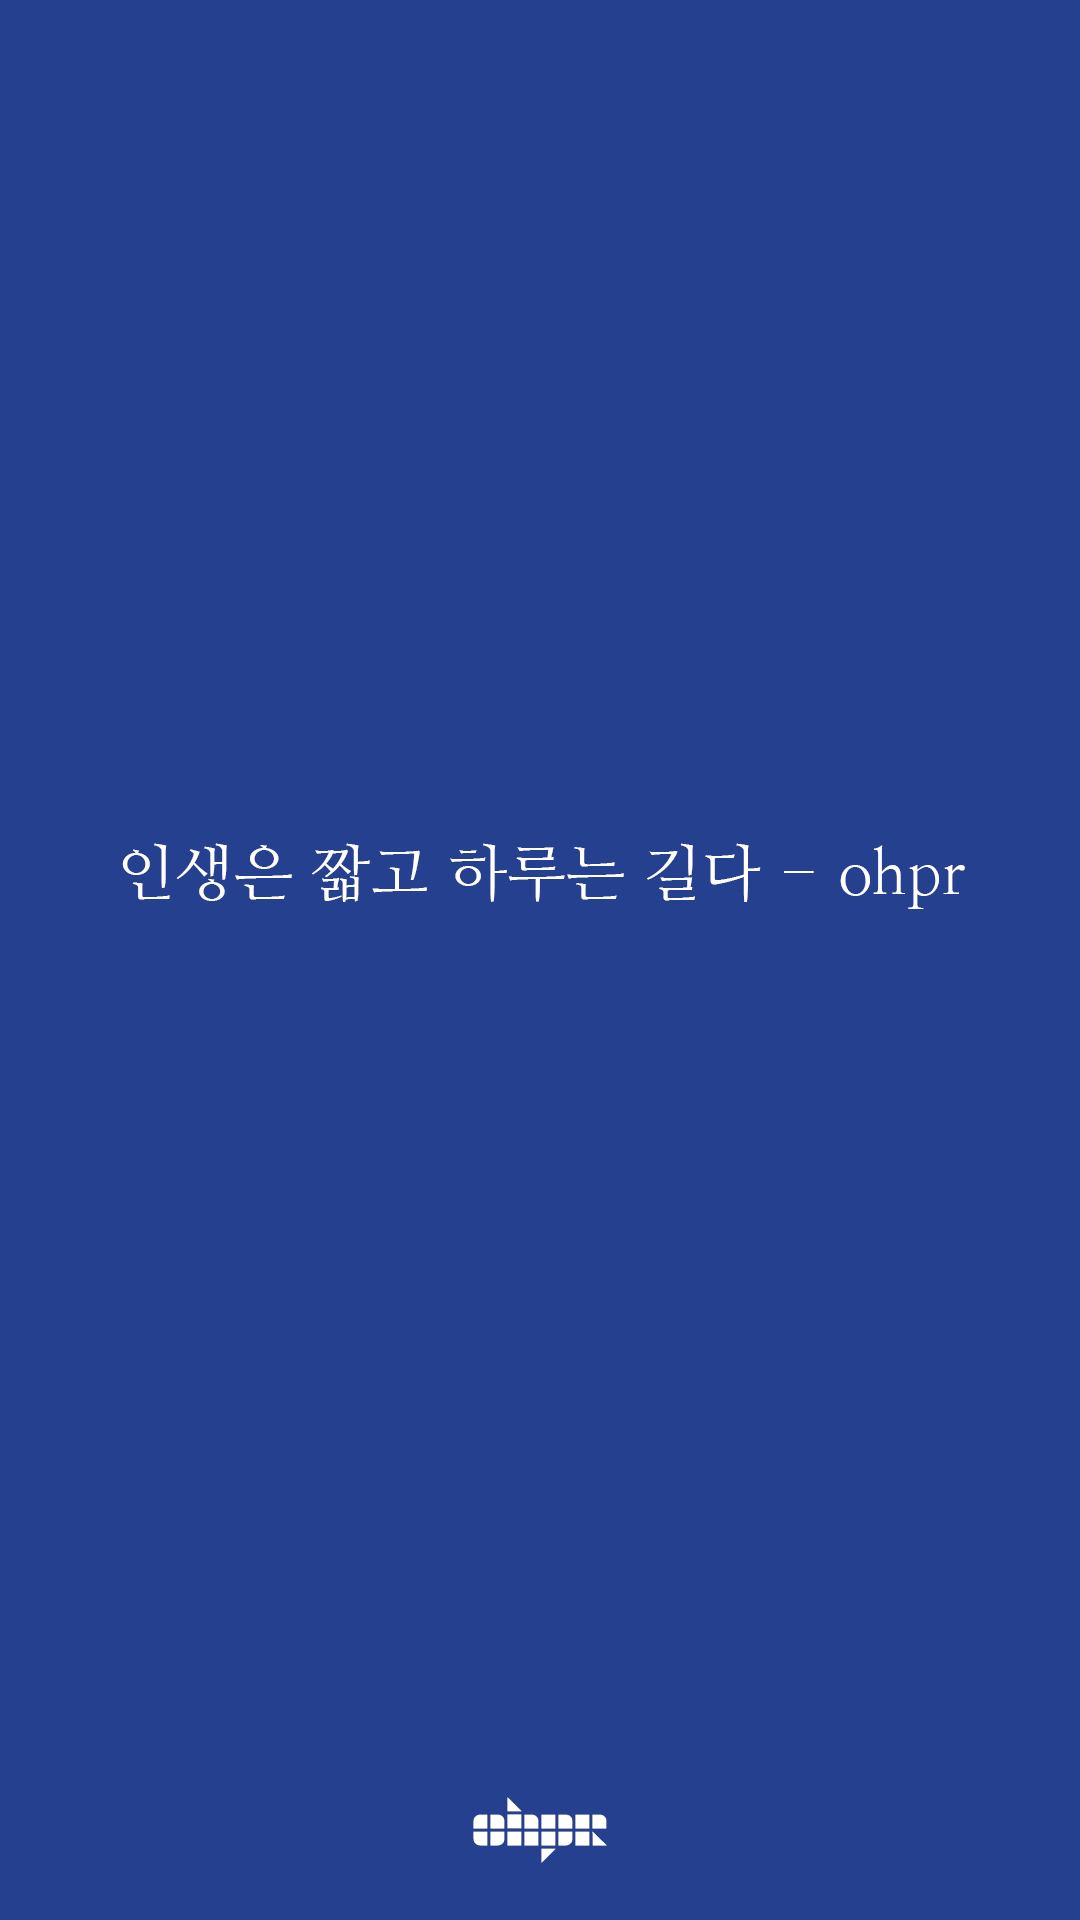 ohpr_wording